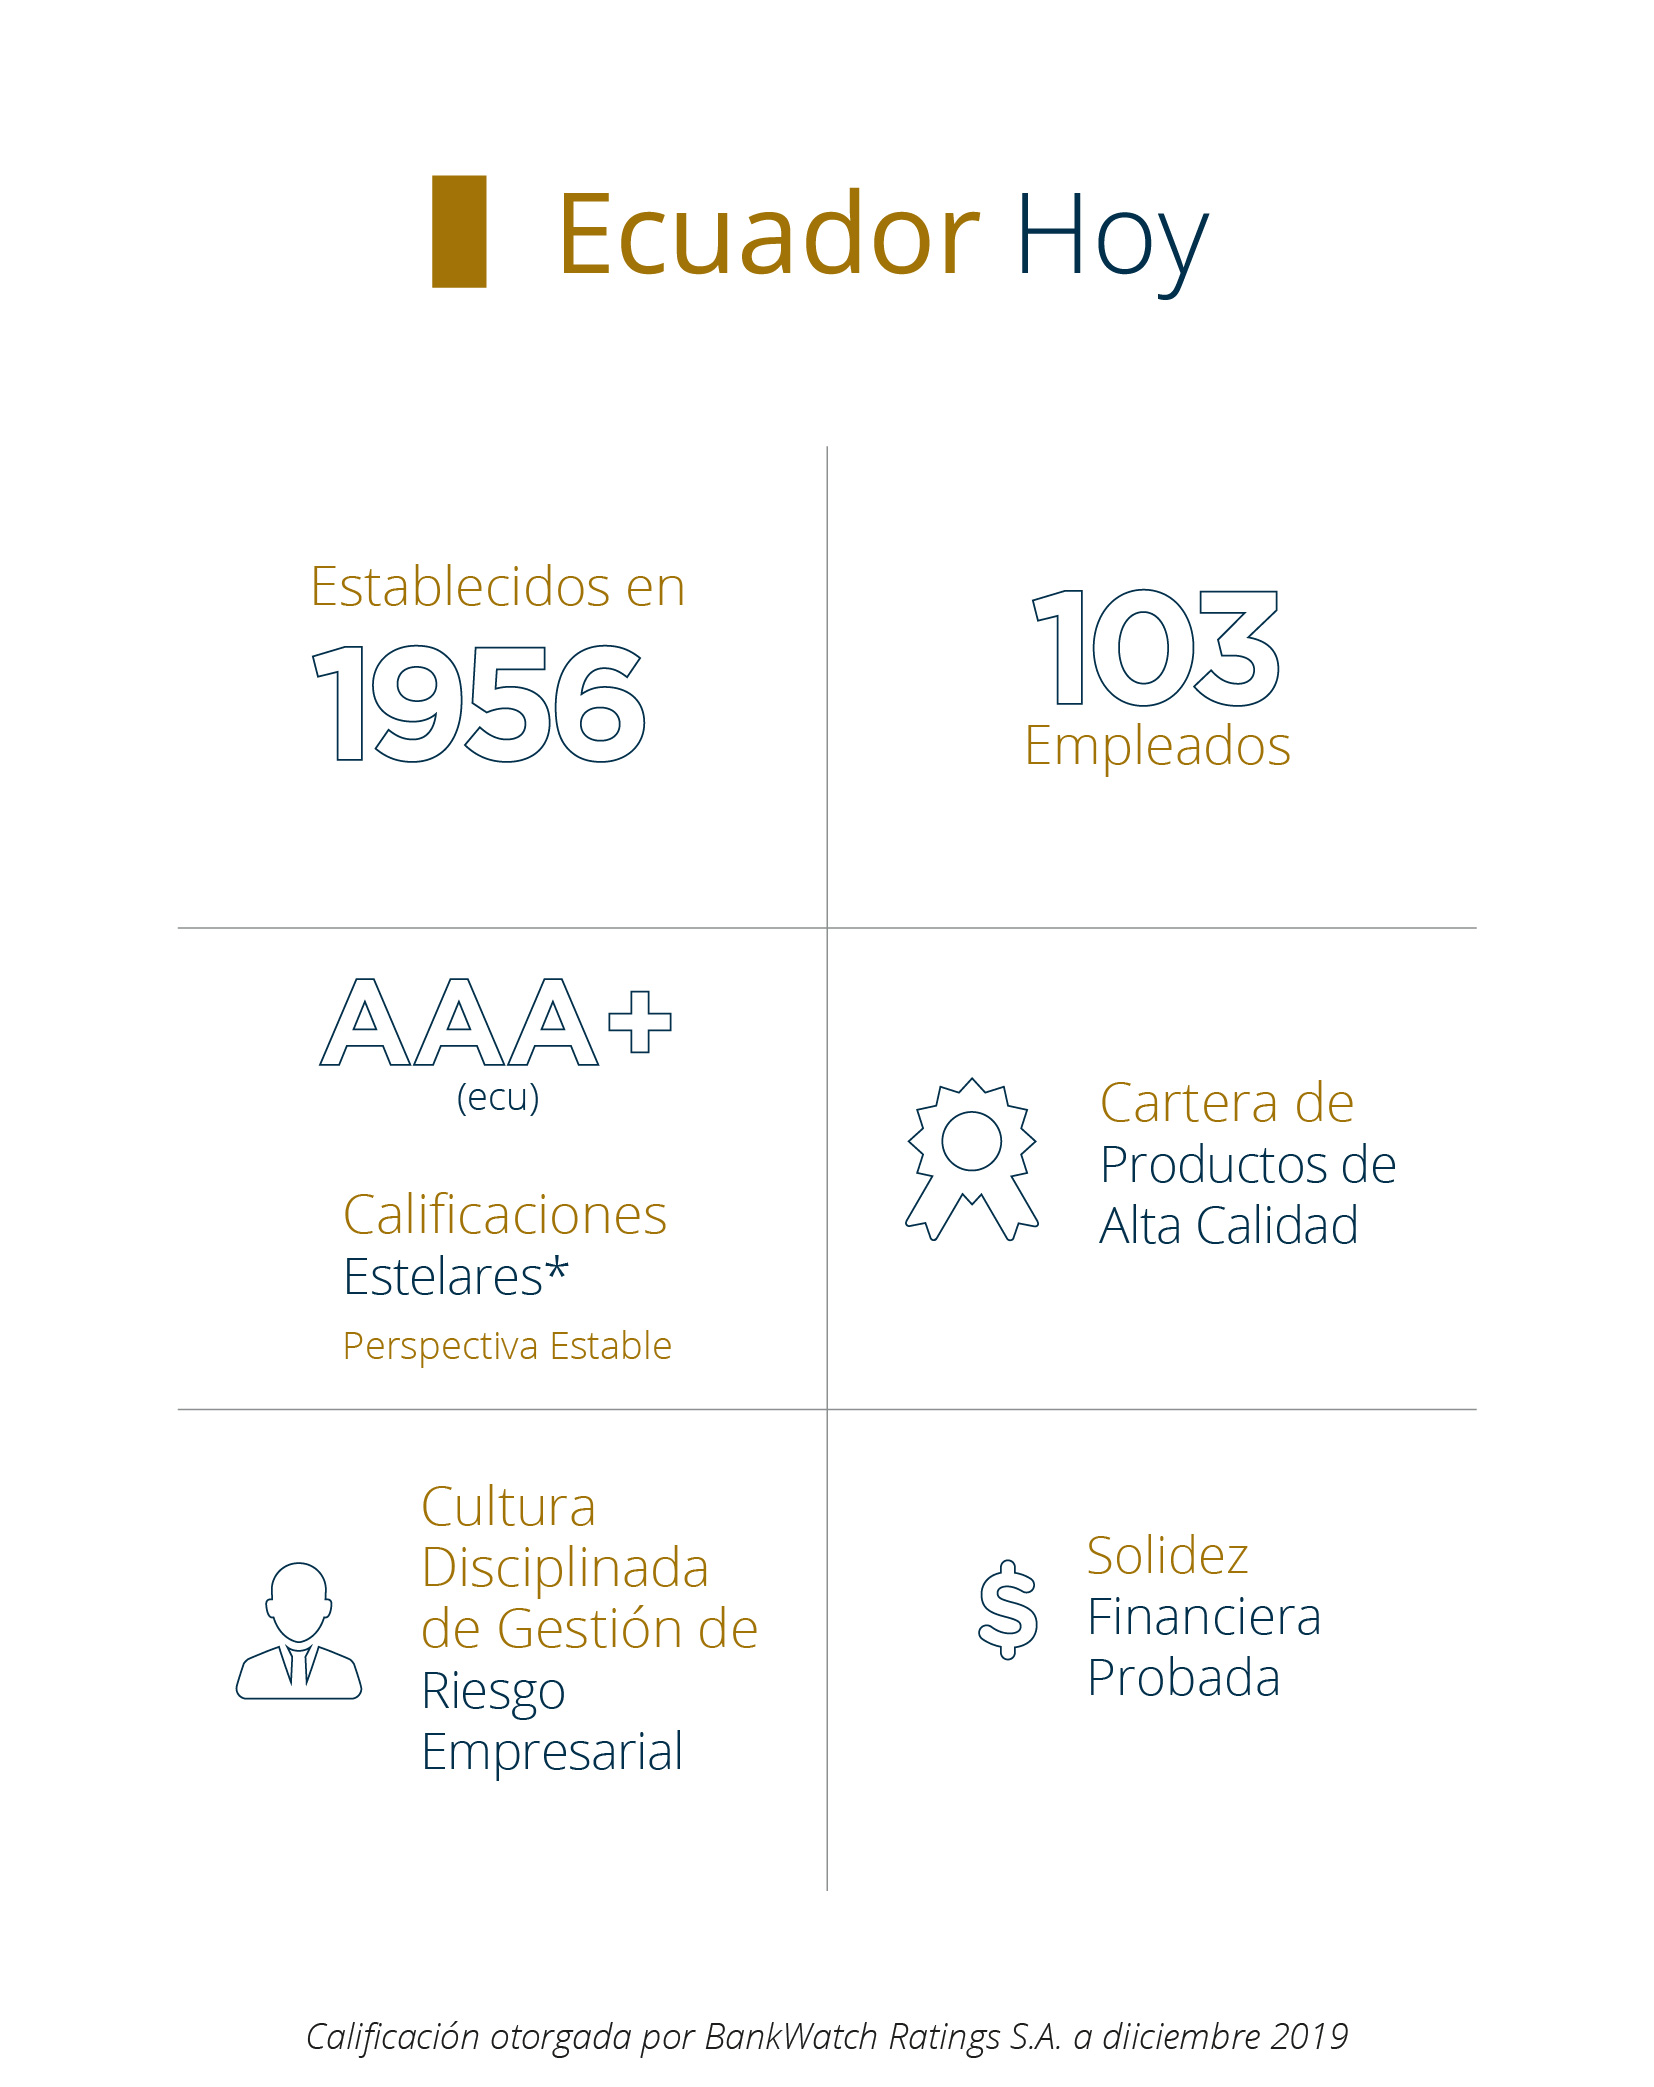 Sobre Pan-American Life Insurance Group de Ecuador